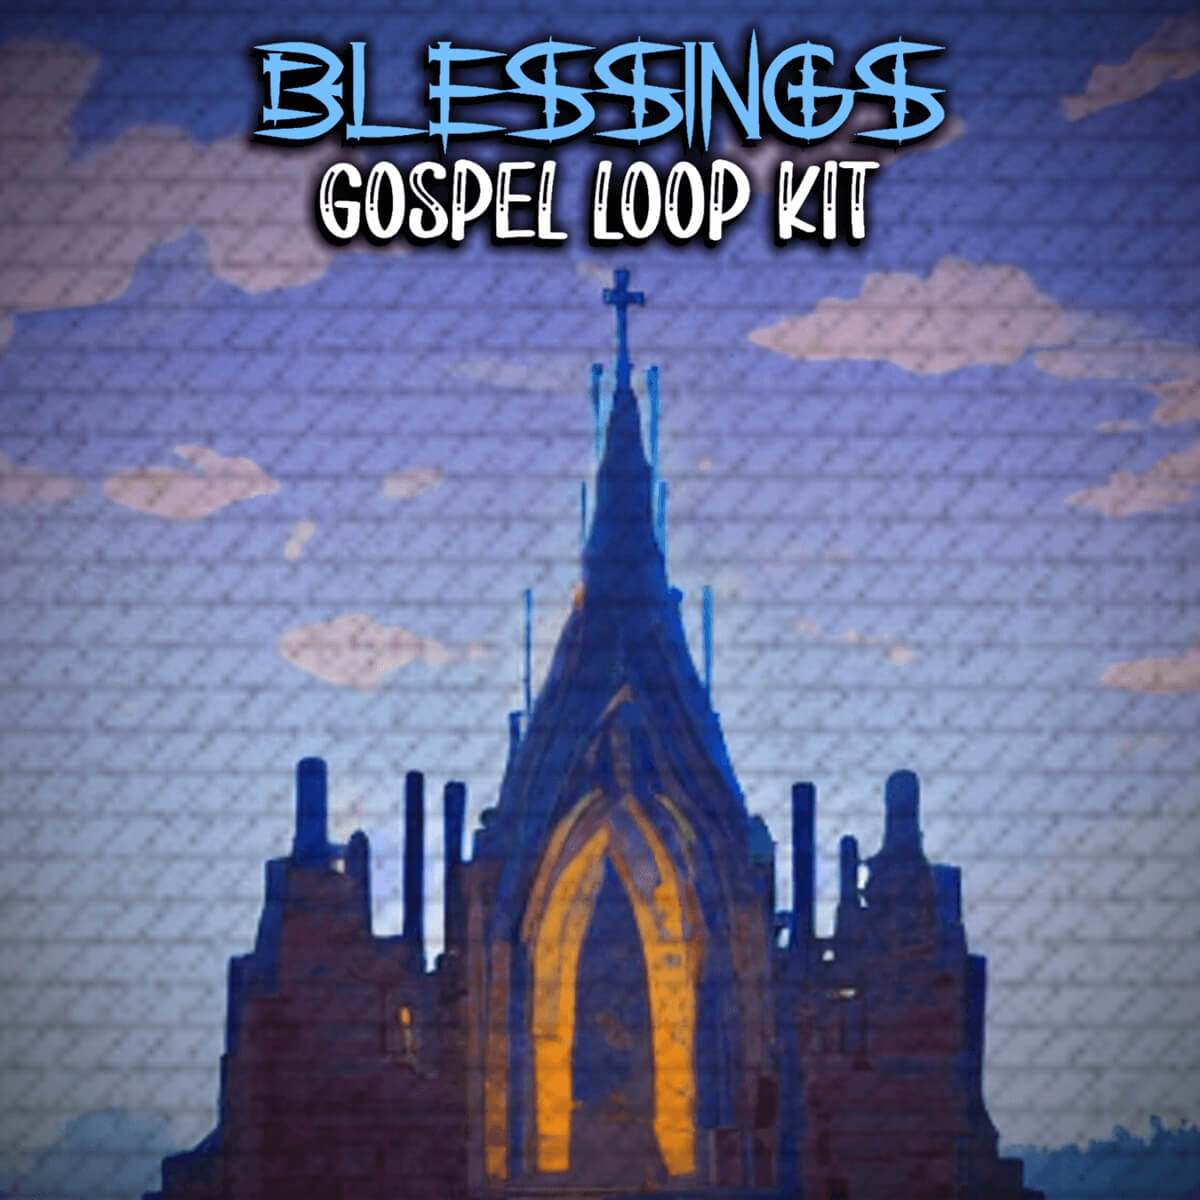 Blessings Gospel Loop Kit